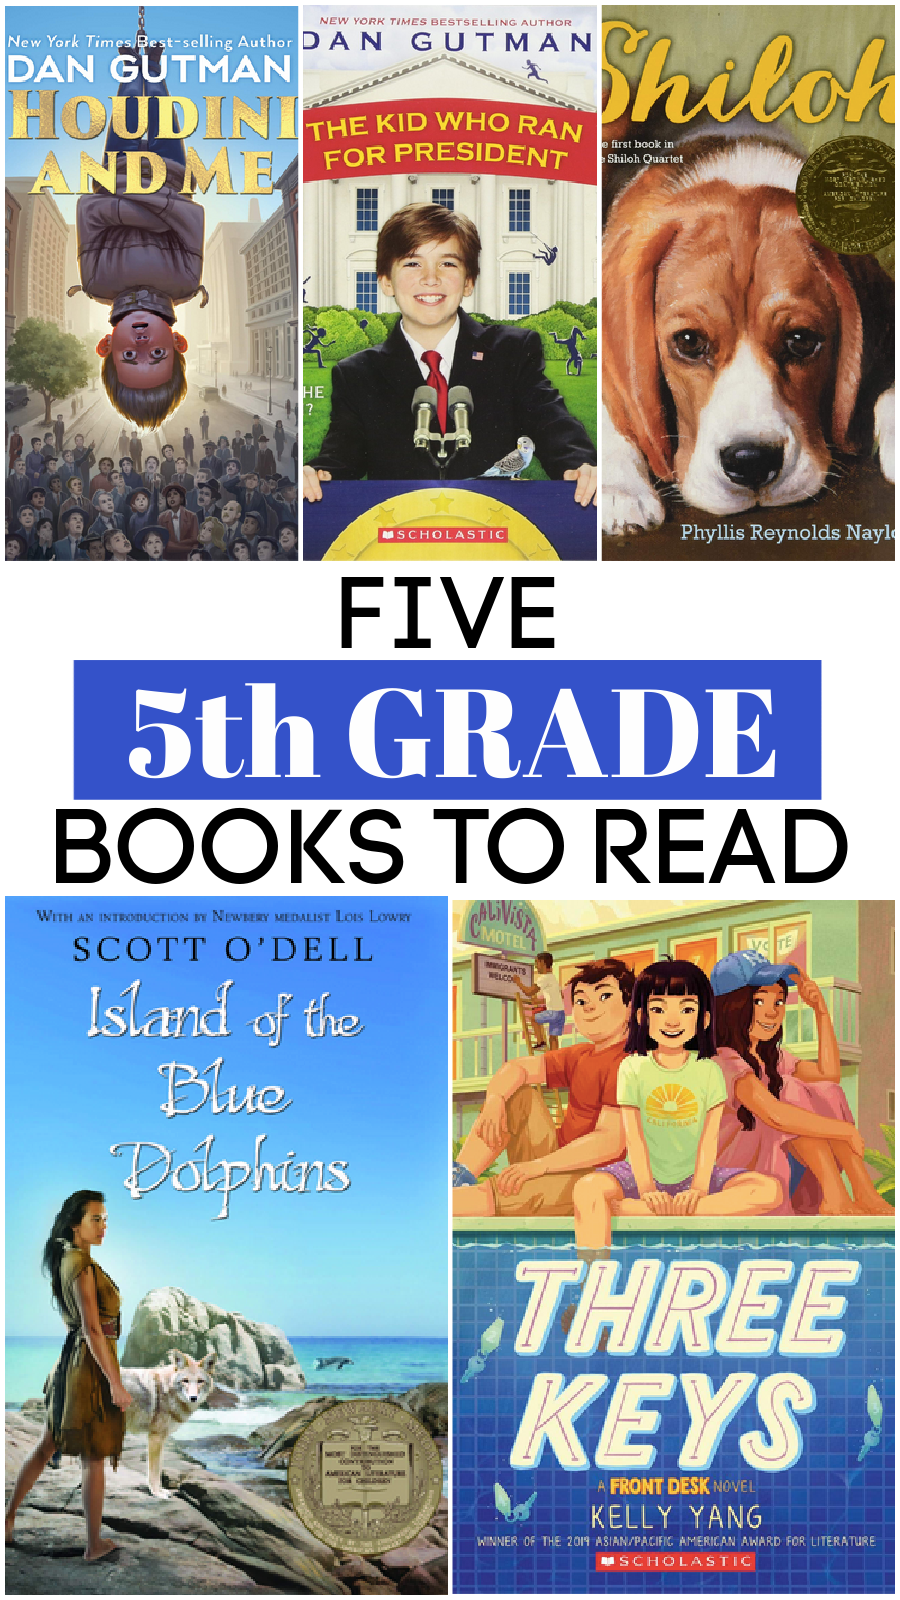 5th grade books to read